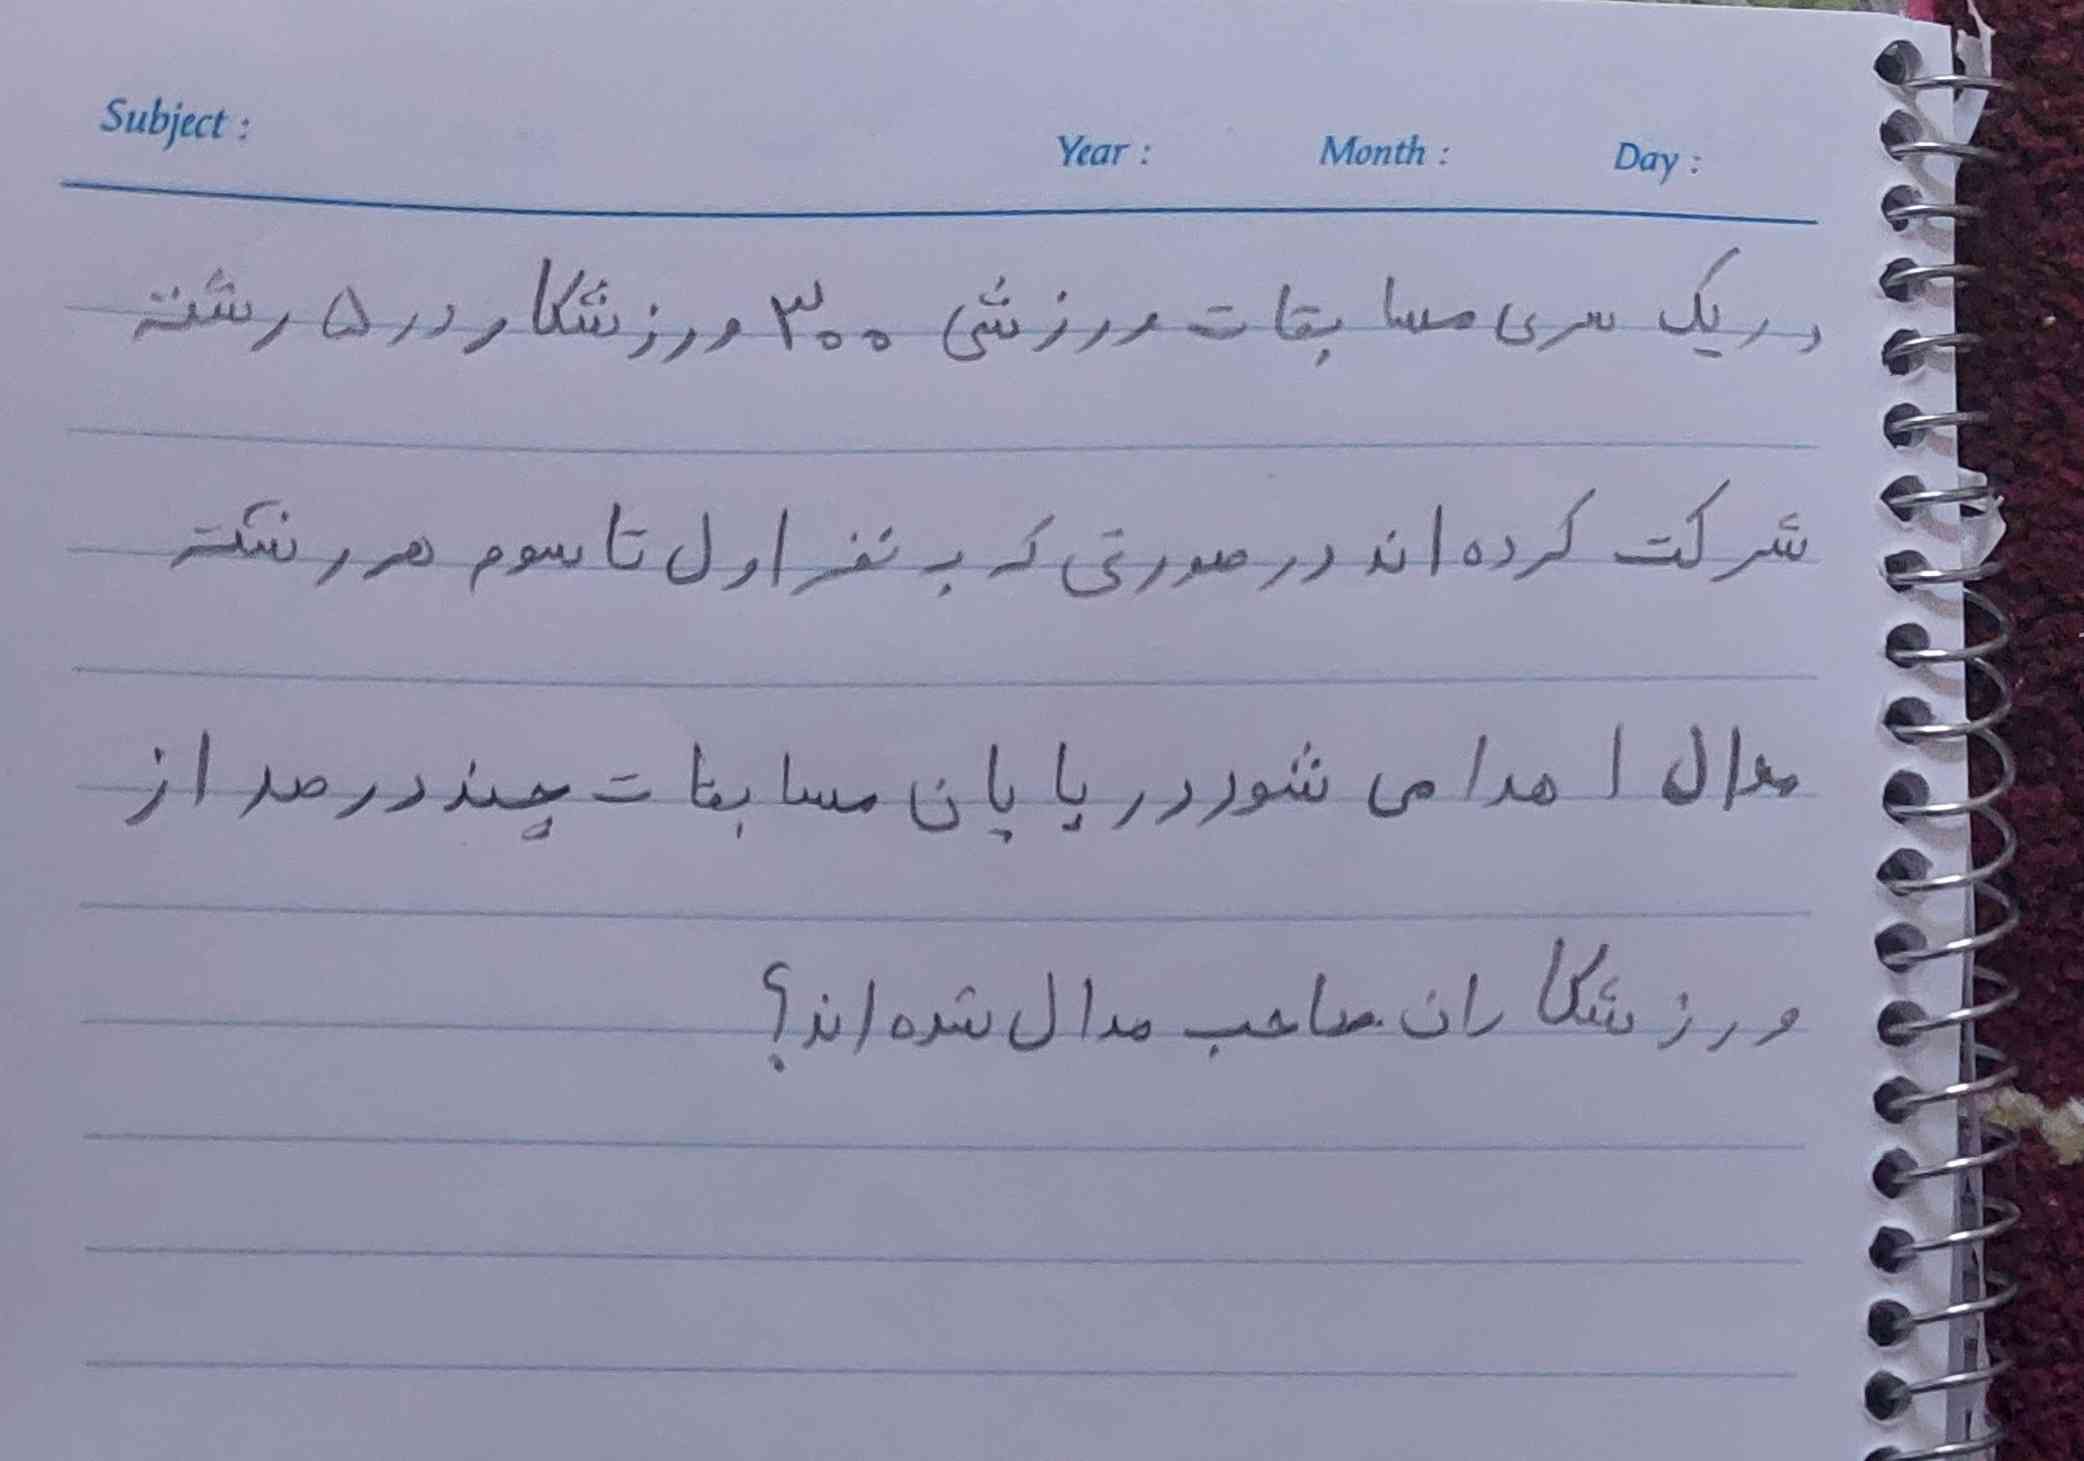 خیلیاتون گفتین بد نوشتم خب اینم خوبش حالا حل کنید عکس بدید به قرآن معرکه میدم